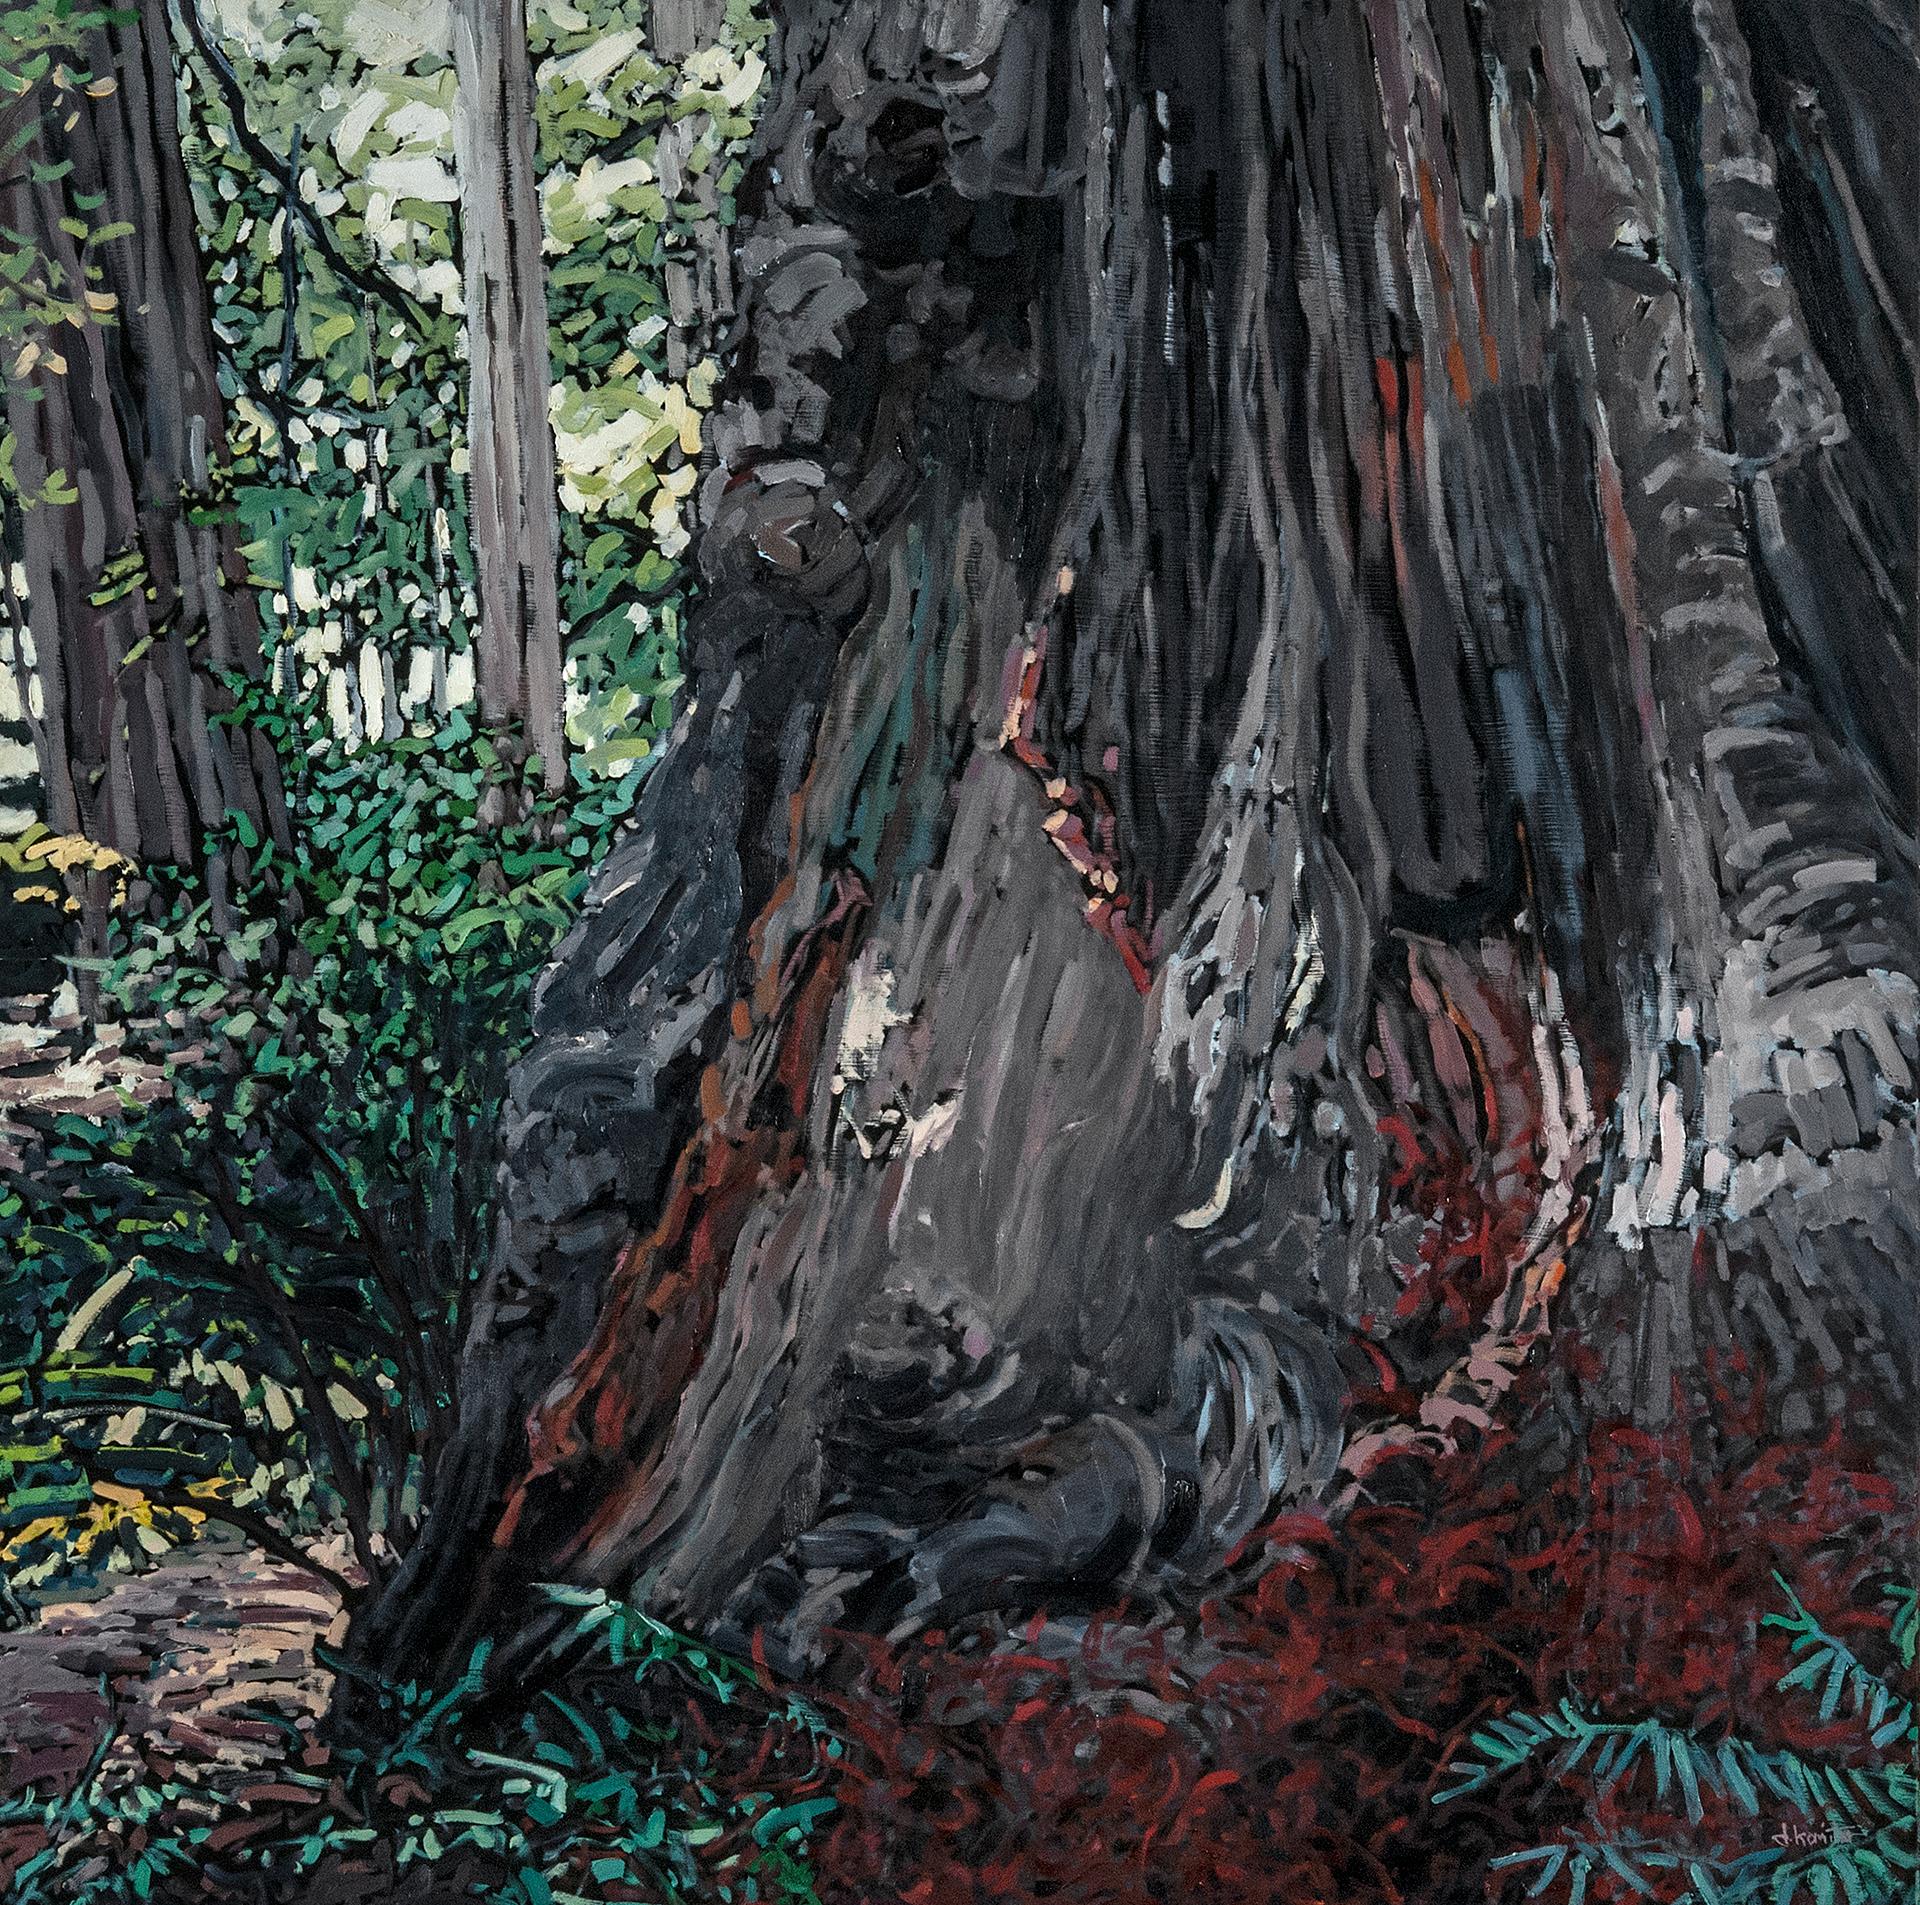 Figurative Painting Deb Komitor - Peinture à l'huile « Old Man of the Forest » (L'ancien homme de la forêt)